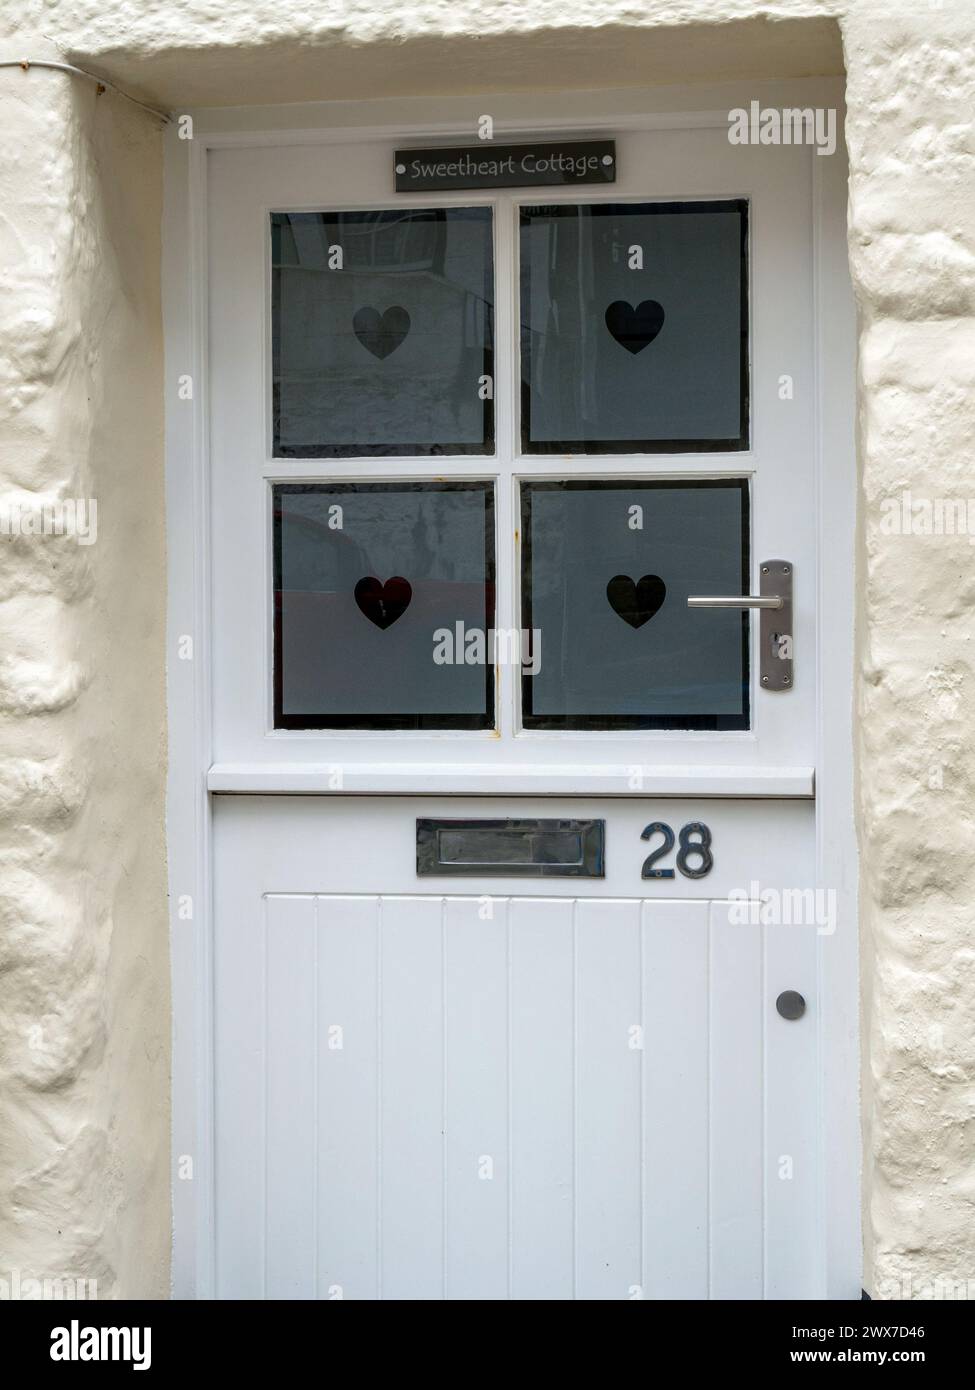 Hübsches 'Sweetheart Cottage' weiße vordere Stalltür eines Hauses mit Herzformen auf geätzten Glasfenstern und Nummer 28 Plakette, St Ives, Cornwall, Großbritannien Stockfoto